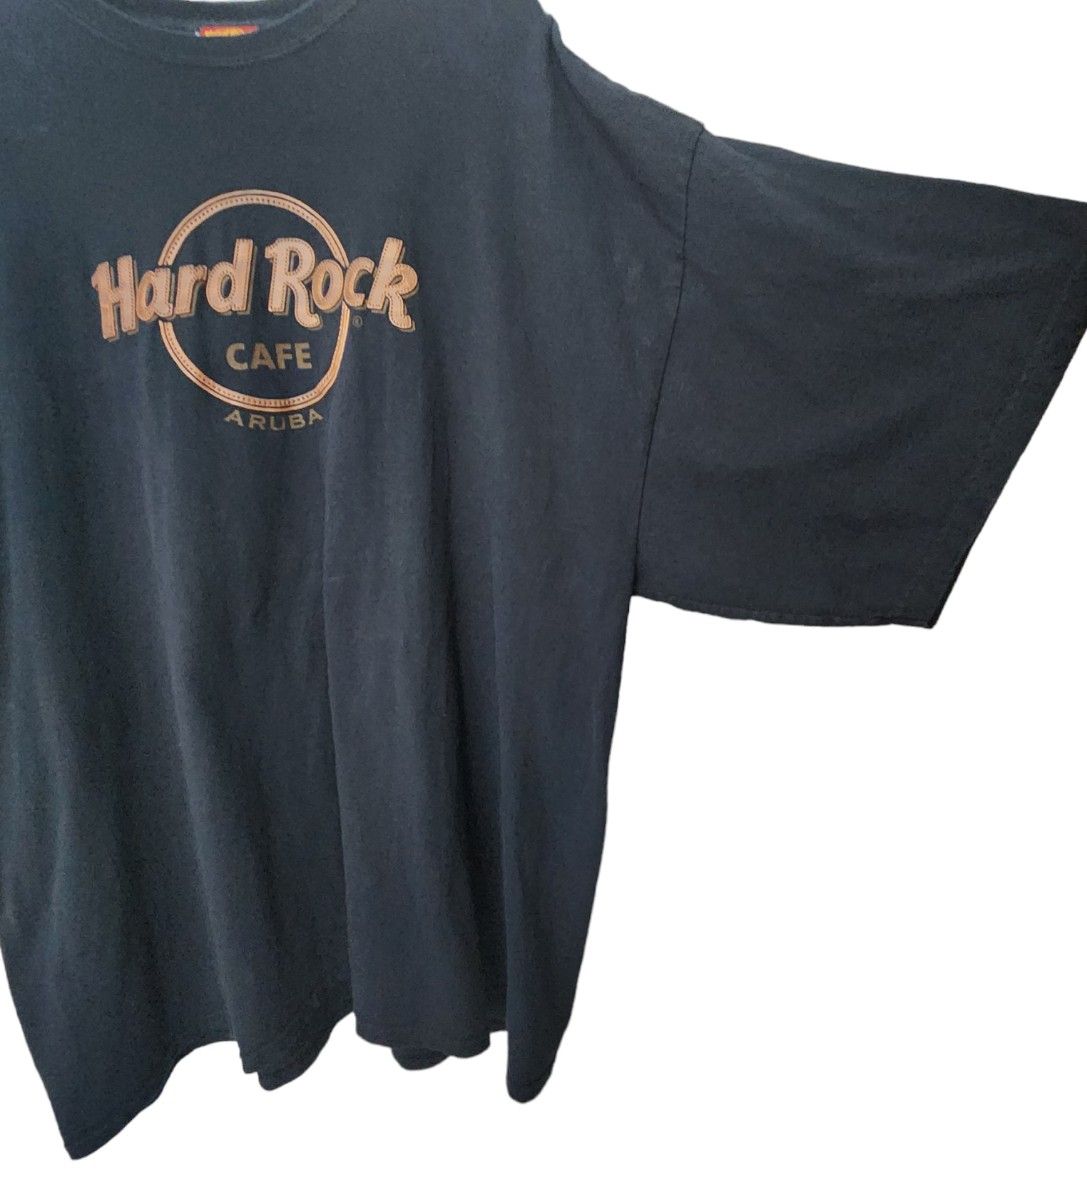 Hard Rock CAFE ハードロックカフェ Tシャツ 古着 レザー調ロゴ ブラック 3XL 大きいサイズ